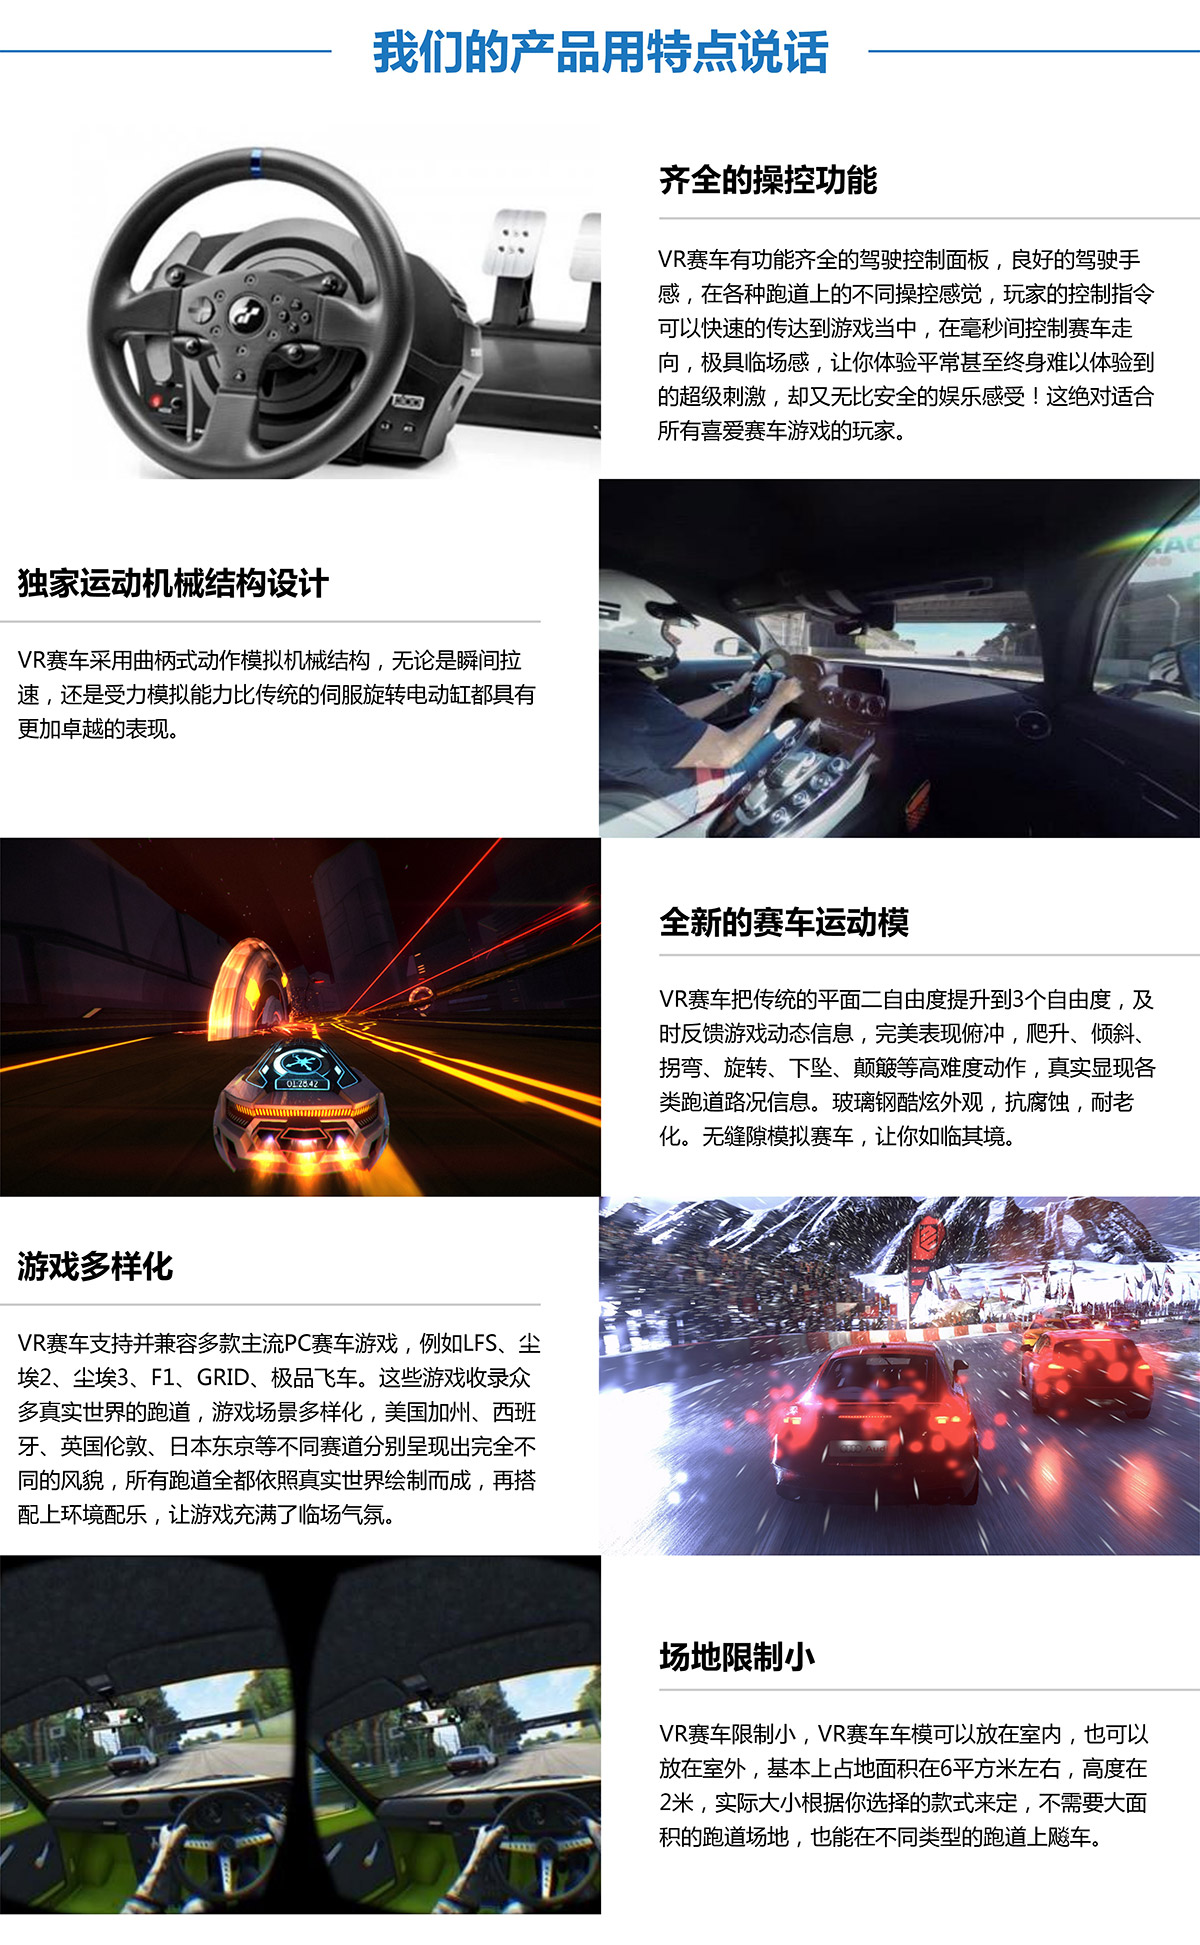 成都卓信智诚科技虚拟VR赛车产品用特点说话.jpg